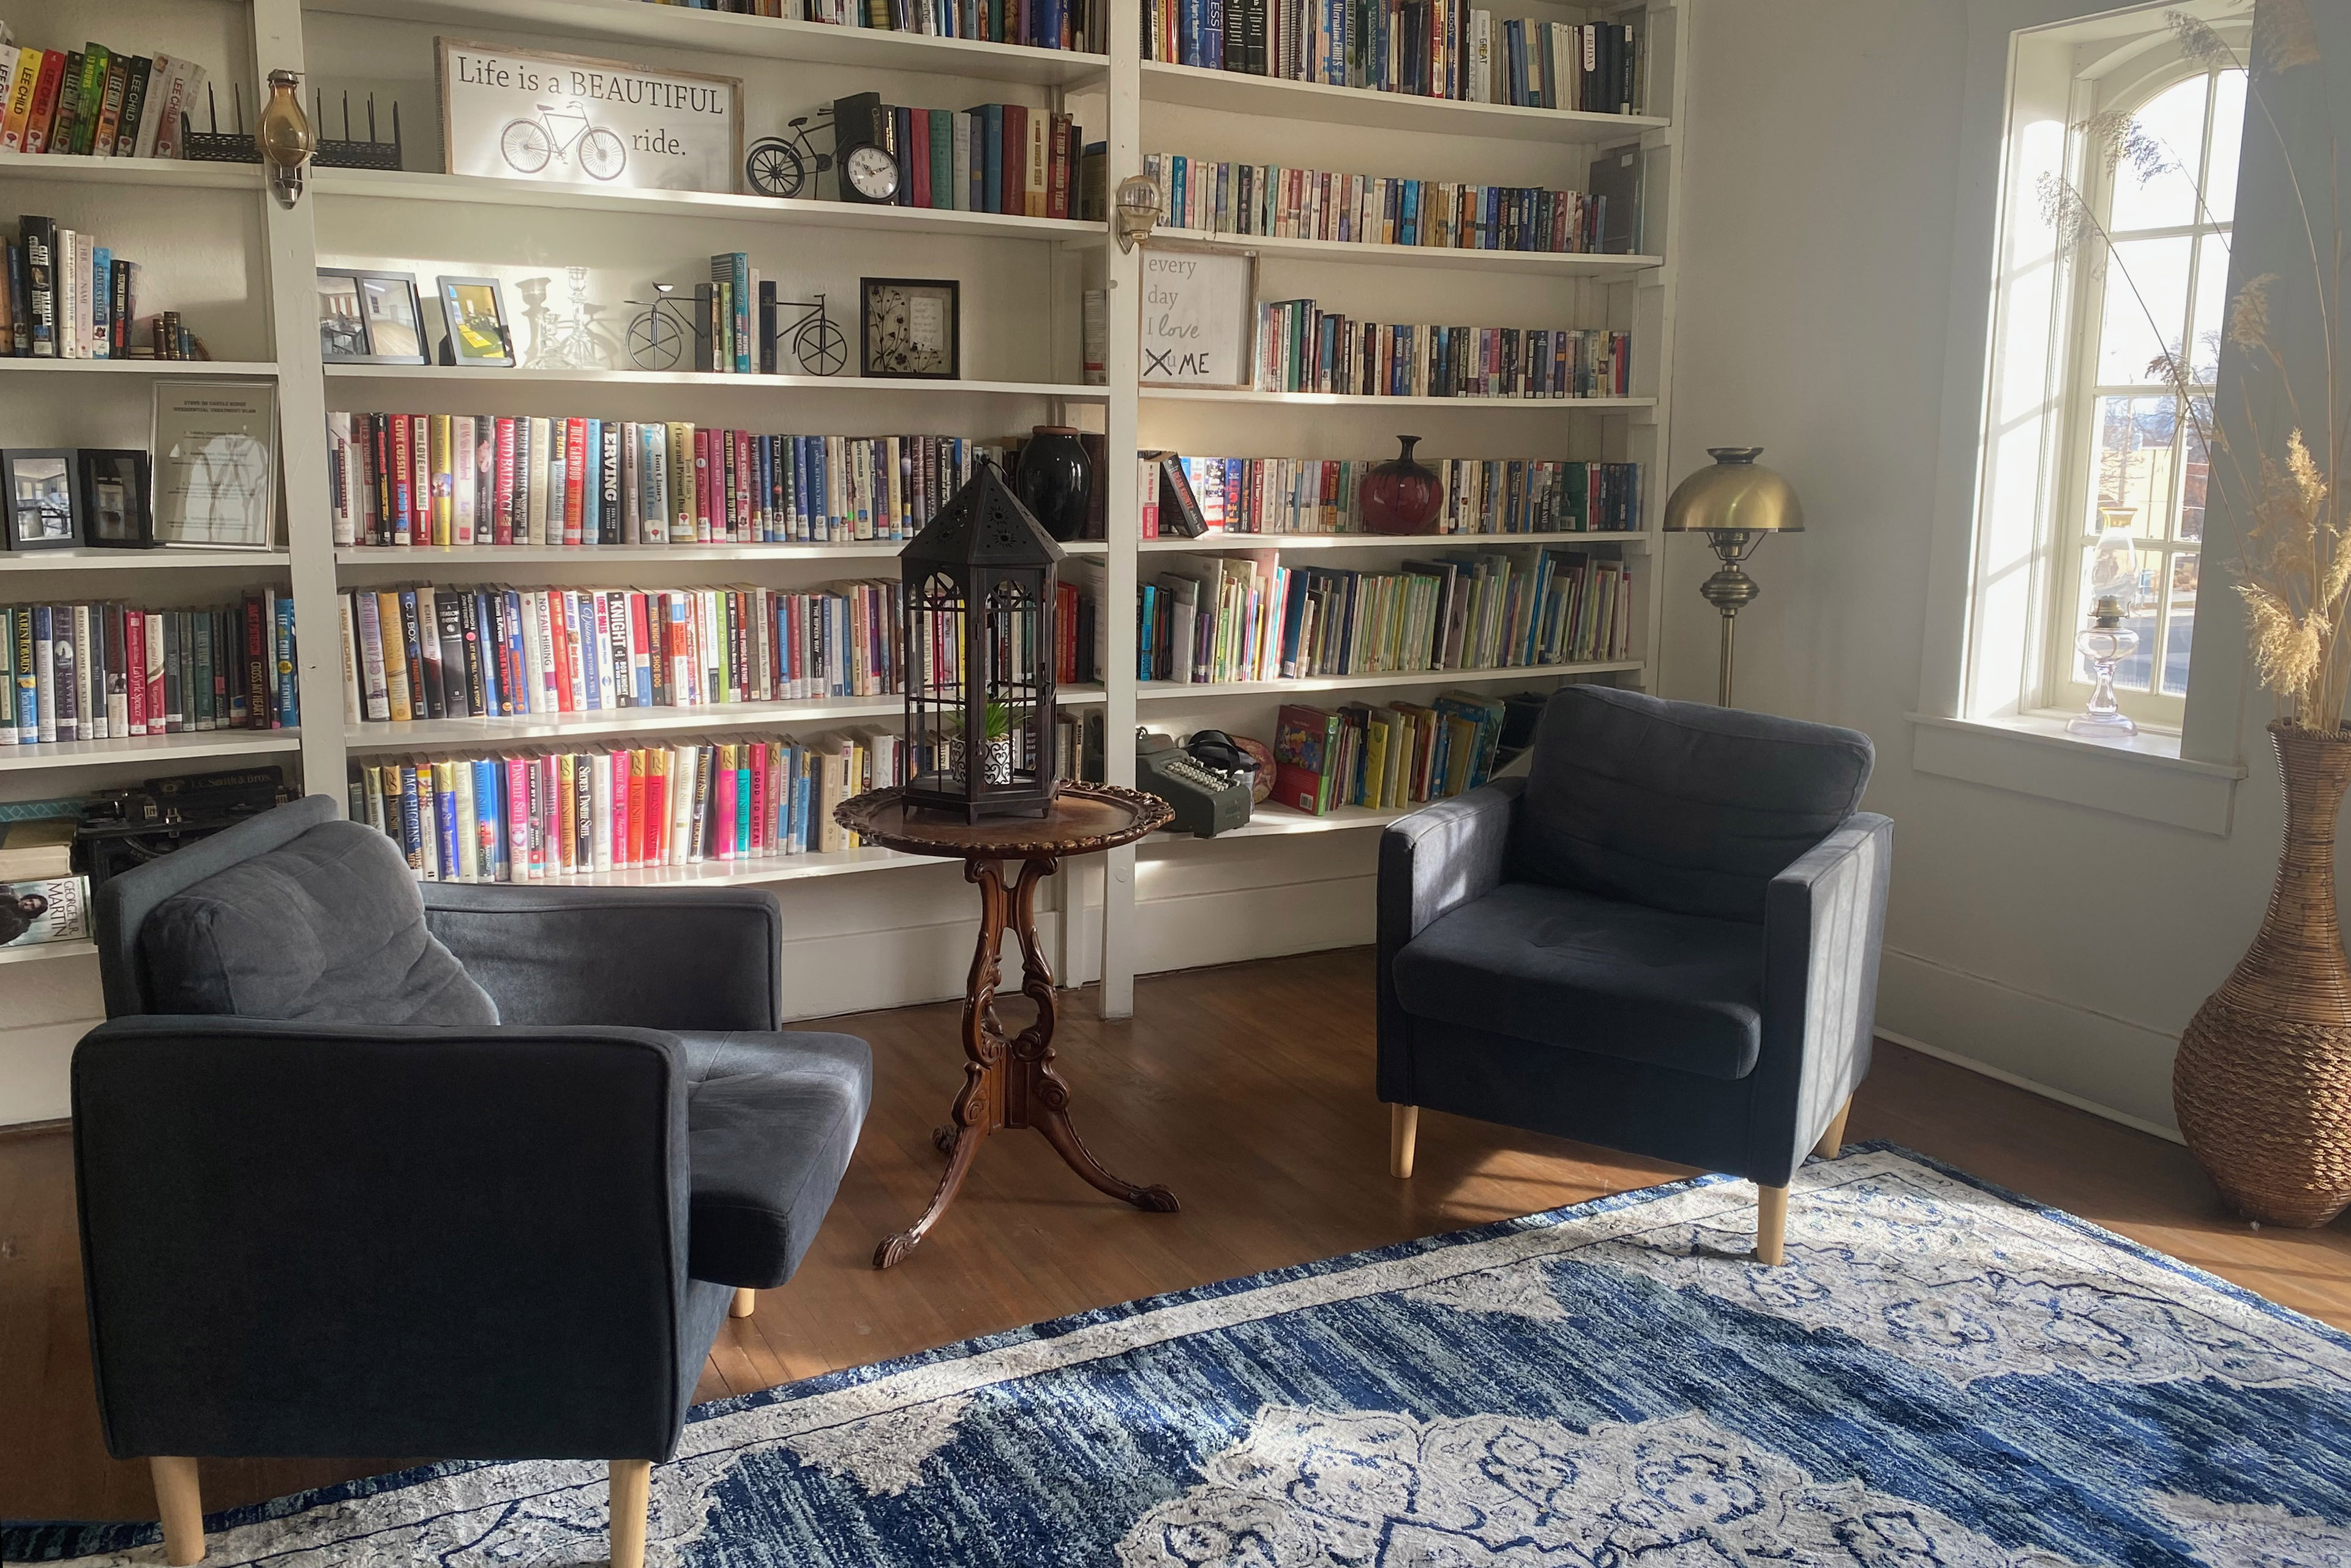 اتاقی با دو صندلی آبی کوسن در مرکز و یک فرش آبی.  دیوارها با قفسه های کتاب از کف تا سقف پوشانده شده اند که پر از کتاب هایی با خارهای رنگارنگ است.  یک پنجره، در دیوار سمت راست، اجازه می دهد تا نور خورشید روشن شود.